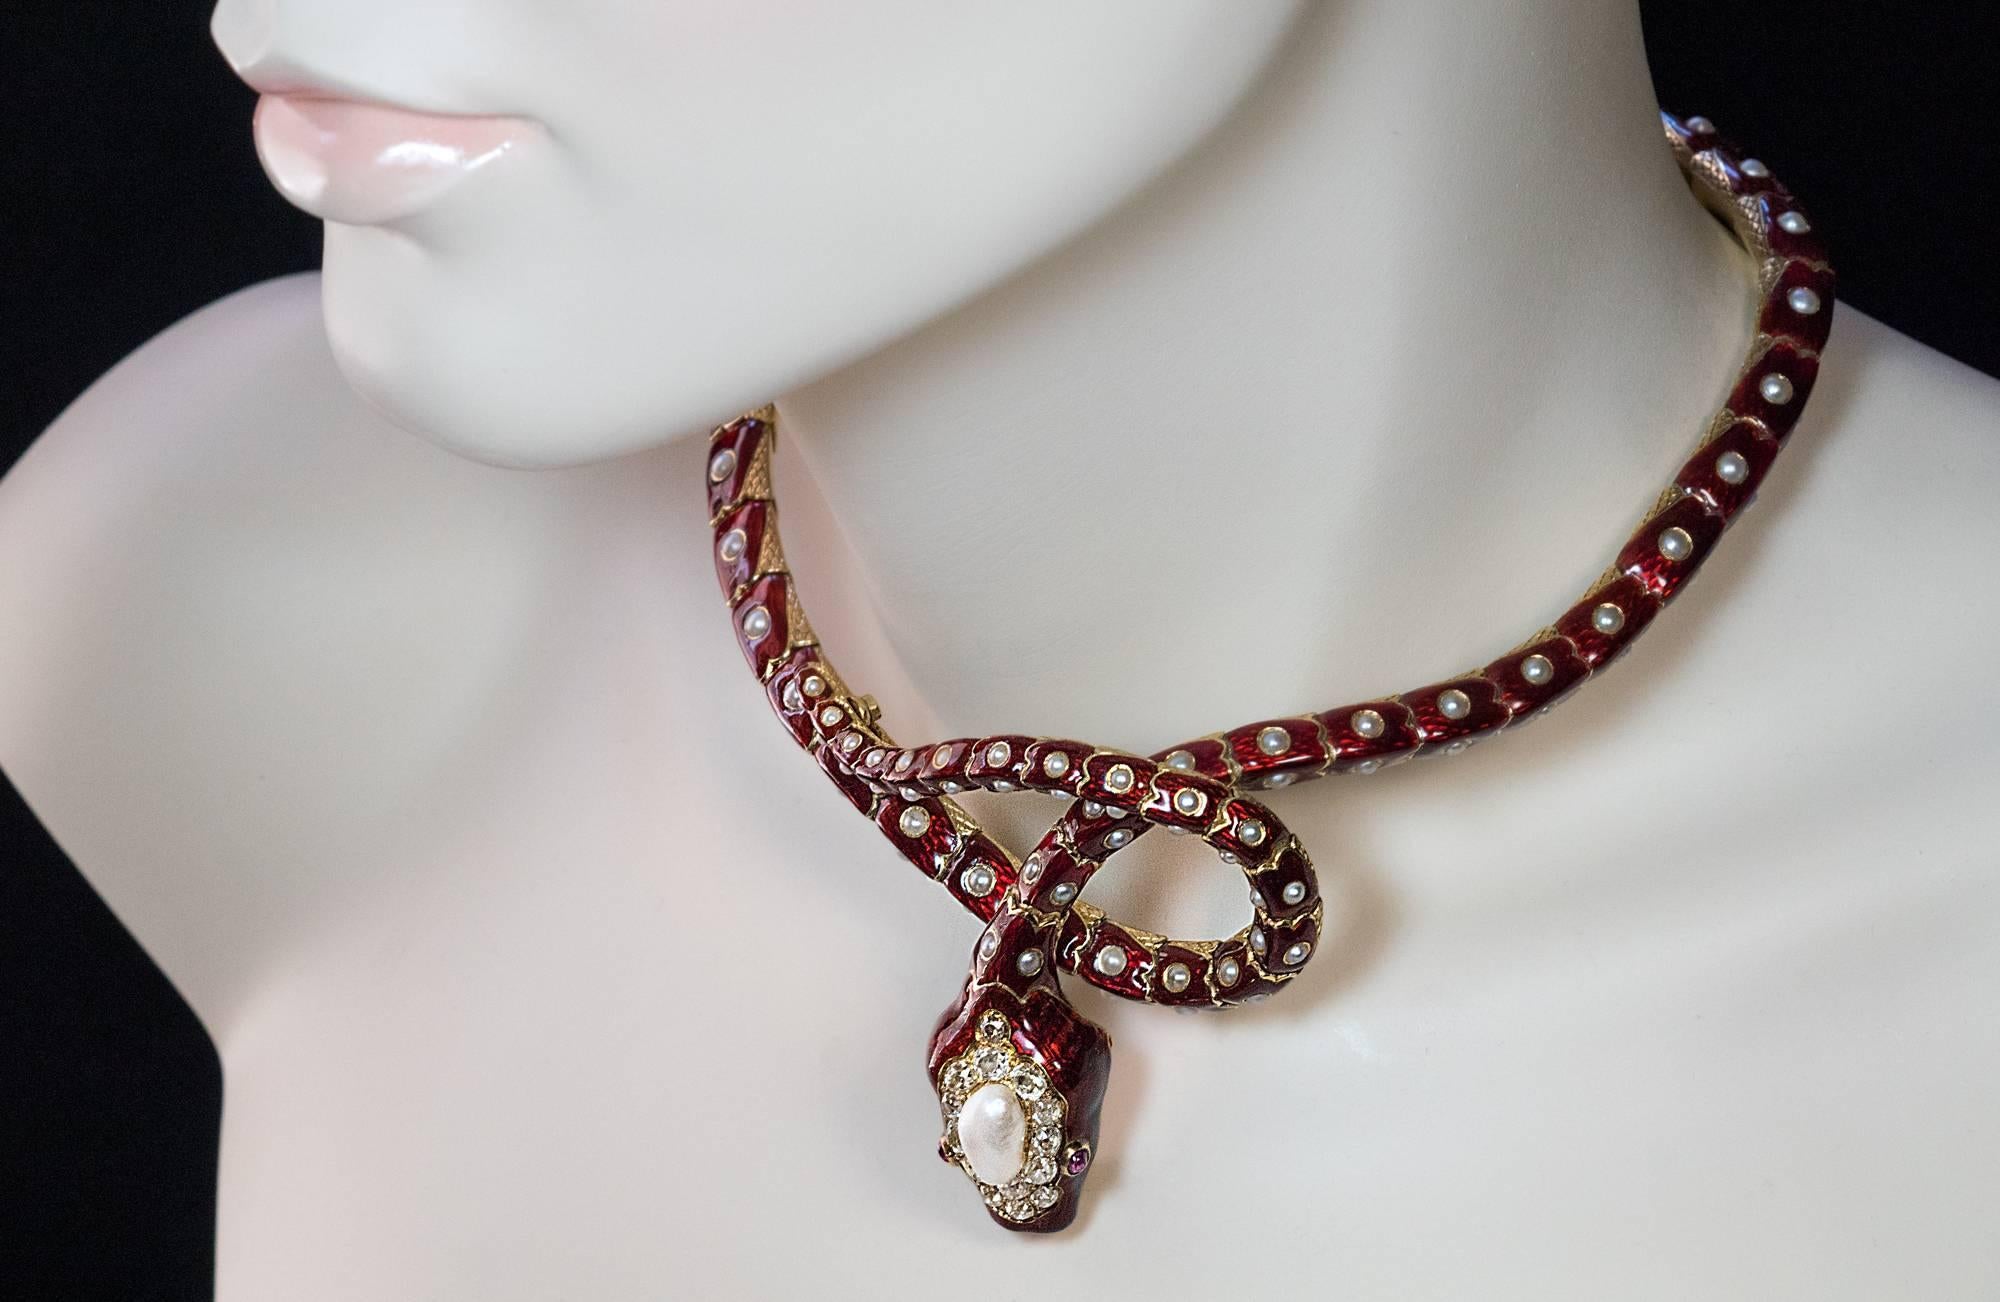 France, vers 1860.
La longueur est d'environ 43 cm.
Poids - 121 grammes.
Ce bracelet/collier serpent articulé d'époque victorienne, d'une qualité exceptionnelle, est formé de sections, chacune gravée pour imiter les écailles d'un serpent. Le dessus